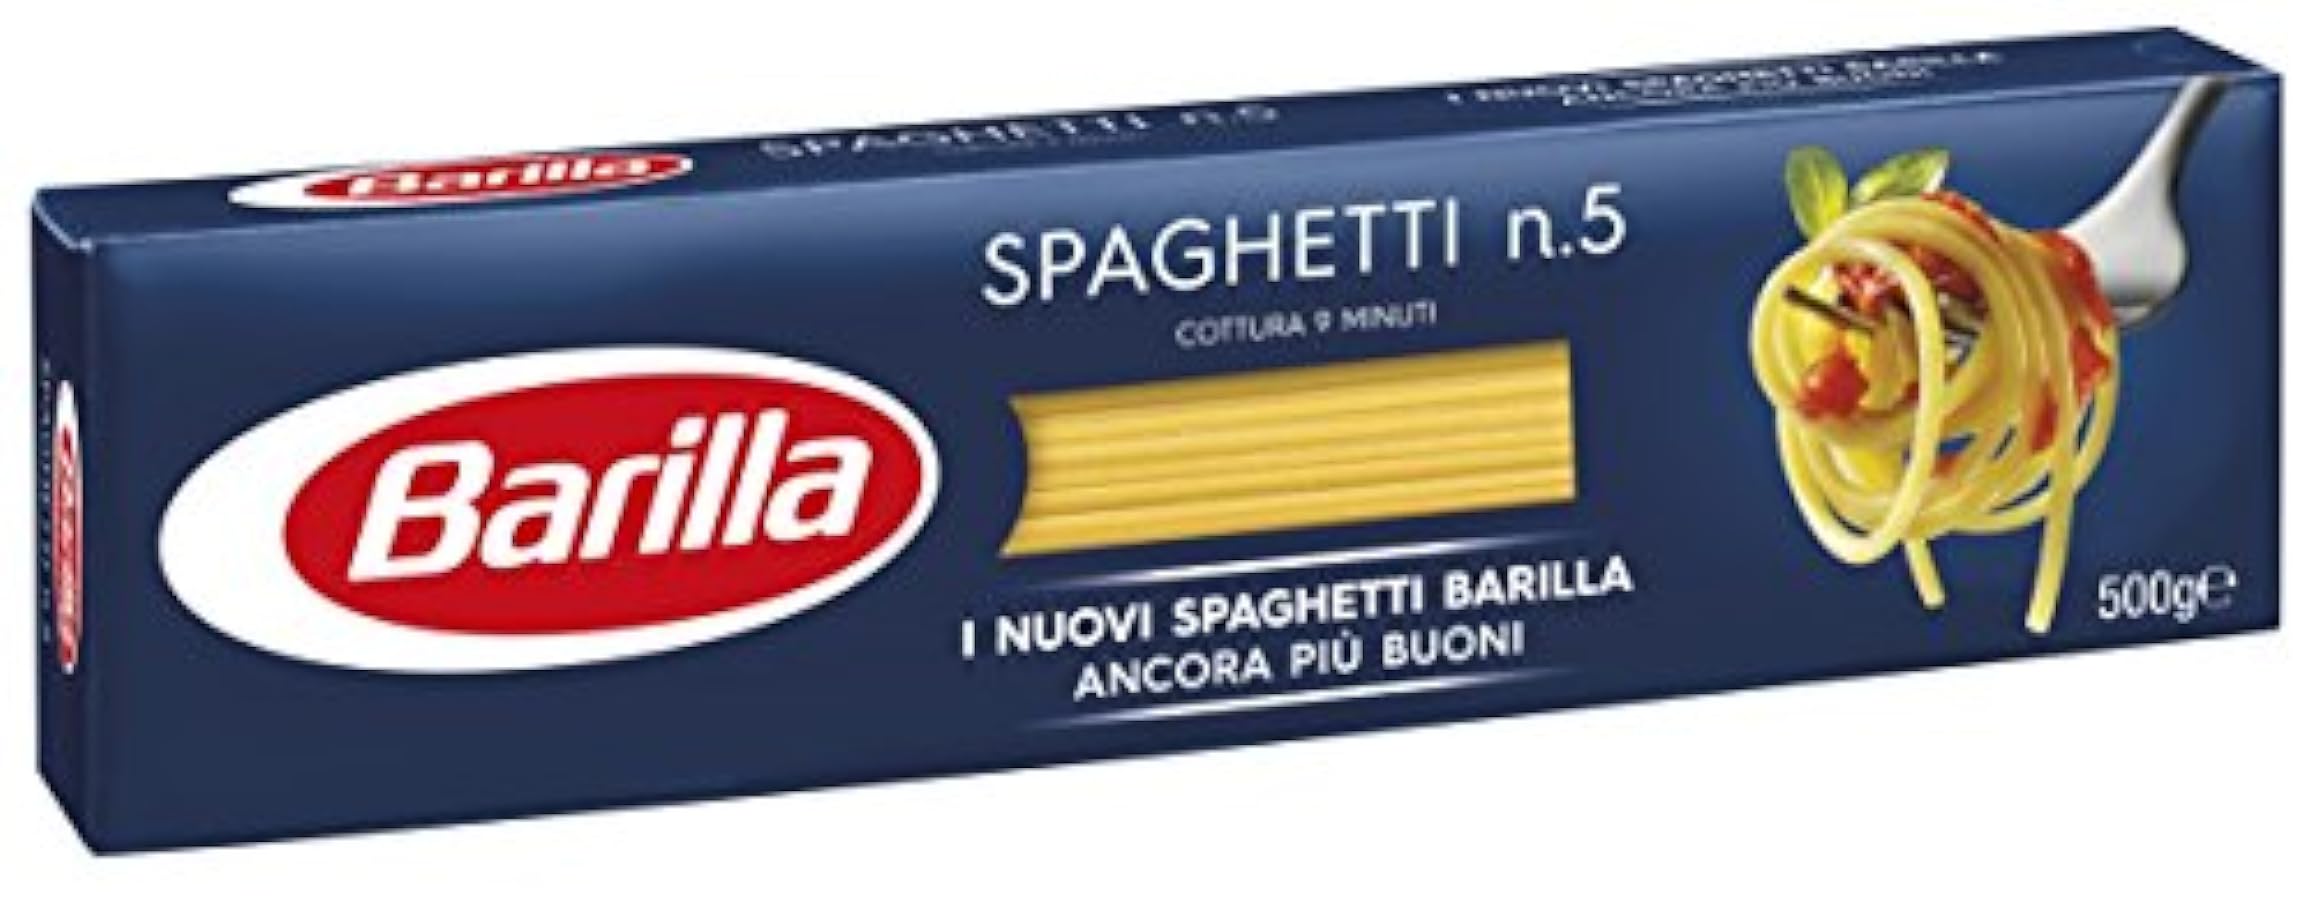 Barilla - Spaghetti n. 5 - 35 confezioni da 500 g [17.5kg] 550361320